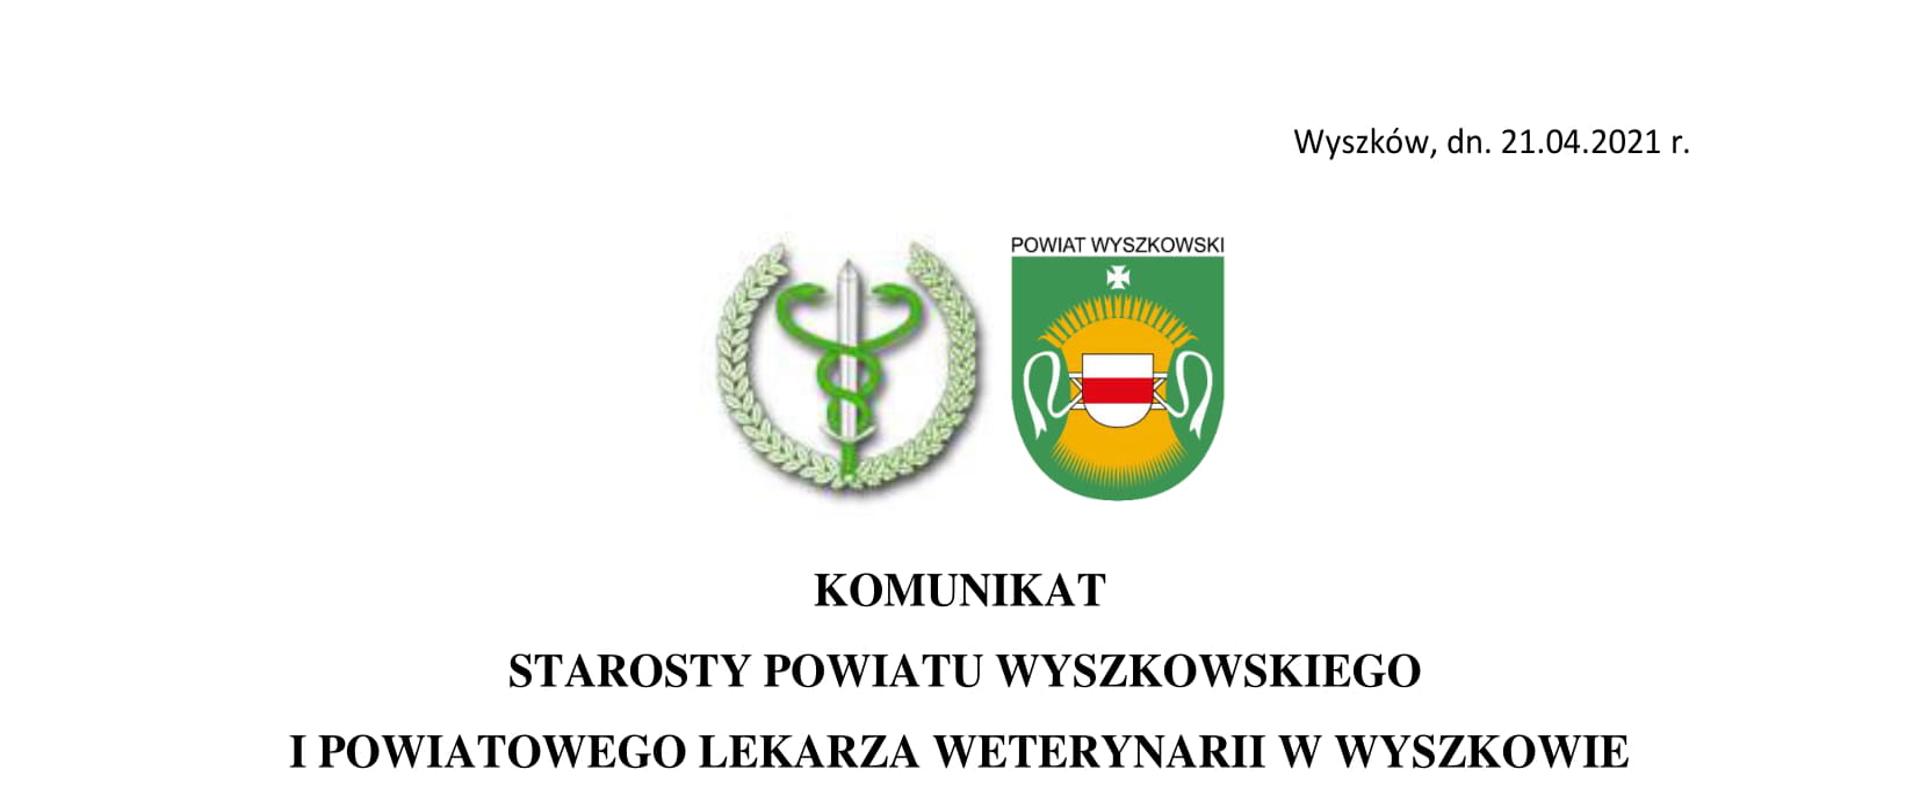 Herb Powiatowego Lekarza Weterynarii oraz Powiatu Wyszkowskiego w prawym górnym rogu: "Wyszków, dn. 21.04.2021 r." poniżej "KOMUNIKAT STAROSTY POWIATU WYSZKOWSKIEGO I POWIATOWEGO LEKARZA WETERYNARII W WYSZKOWIE " dalej treść: "Szanowni Państwo,
informujemy, że na terenie powiatu wyszkowskiego wykryto pierwsze w 2021 roku
ognisko grypy ptaków (HPAI). W dniu 20 kwietnia 2021 r. Powiatowy Lekarz Weterynarii
w Wyszkowie otrzymał sprawozdanie z badań wykonanych w Państwowym Instytucie
Weterynaryjnym – Państwowym Instytucie Badawczym w Puławach dotyczące próbek
pobranych na fermie kur niosek, zlokalizowanej w miejscowości Przyjmy, gmina Brańszczyk,
powiat wyszkowski. W gospodarstwie, w którym stwierdzono chorobę zostały wdrożone
wszelkie procedury zwalczania przewidziane w przypadku HPAI, określone w rozporządzeniu
Ministra Rolnictwa i Rozwoju Wsi z dnia 18 grudnia 2007 r. w sprawie zwalczania grypy
ptaków.
W dniu 21.04.2021 r. odbyło się posiedzenie Powiatowego Zespołu Zarządzania
Kryzysowego w Wyszkowie. Zgodnie z obowiązującymi procedurami w ramach działań
prewencyjnych zapobiegających rozprzestrzenianiu się wirusa, w najbliższym czasie
Wojewoda Mazowiecki podpisze i opublikuje rozporządzenie w sprawie zwalczania wysoce
zjadliwej grypy ptaków (HPAI) i wyznaczenia obszarów zapowietrzonego
i zagrożonego. Po wydaniu wskazanego dokumentu zostaną podjęte kolejne niezbędne
działania.
Apelujemy do wszystkich mieszkańców i hodowców drobiu o zachowanie
szczególnych środków ostrożności i stosowanie środków bioasekuracji, minimalizujących
ryzyko przeniesienia wirusa grypy ptaków do gospodarstw. W przypadku podejrzenia
zachorowania wśród zwierząt prosimy o niezwłoczne zgłaszanie się do odpowiednich osób
i instytucji tj. lekarzy weterynarii prywatnej praktyki, Powiatowego Lekarza Weterynarii
w Wyszkowie, Starosty Powiatu Wyszkowskiego bądź burmistrza i wójtów gmin wchodzących
w skład powiatu wyszkowskiego.
Powiatowy Lekarz Weterynarii
w Wyszkowie
Edmund Paweł Matey
w/z Starosty
Wicestarosta Powiatu Wyszkowskiego
Leszek Marszał"